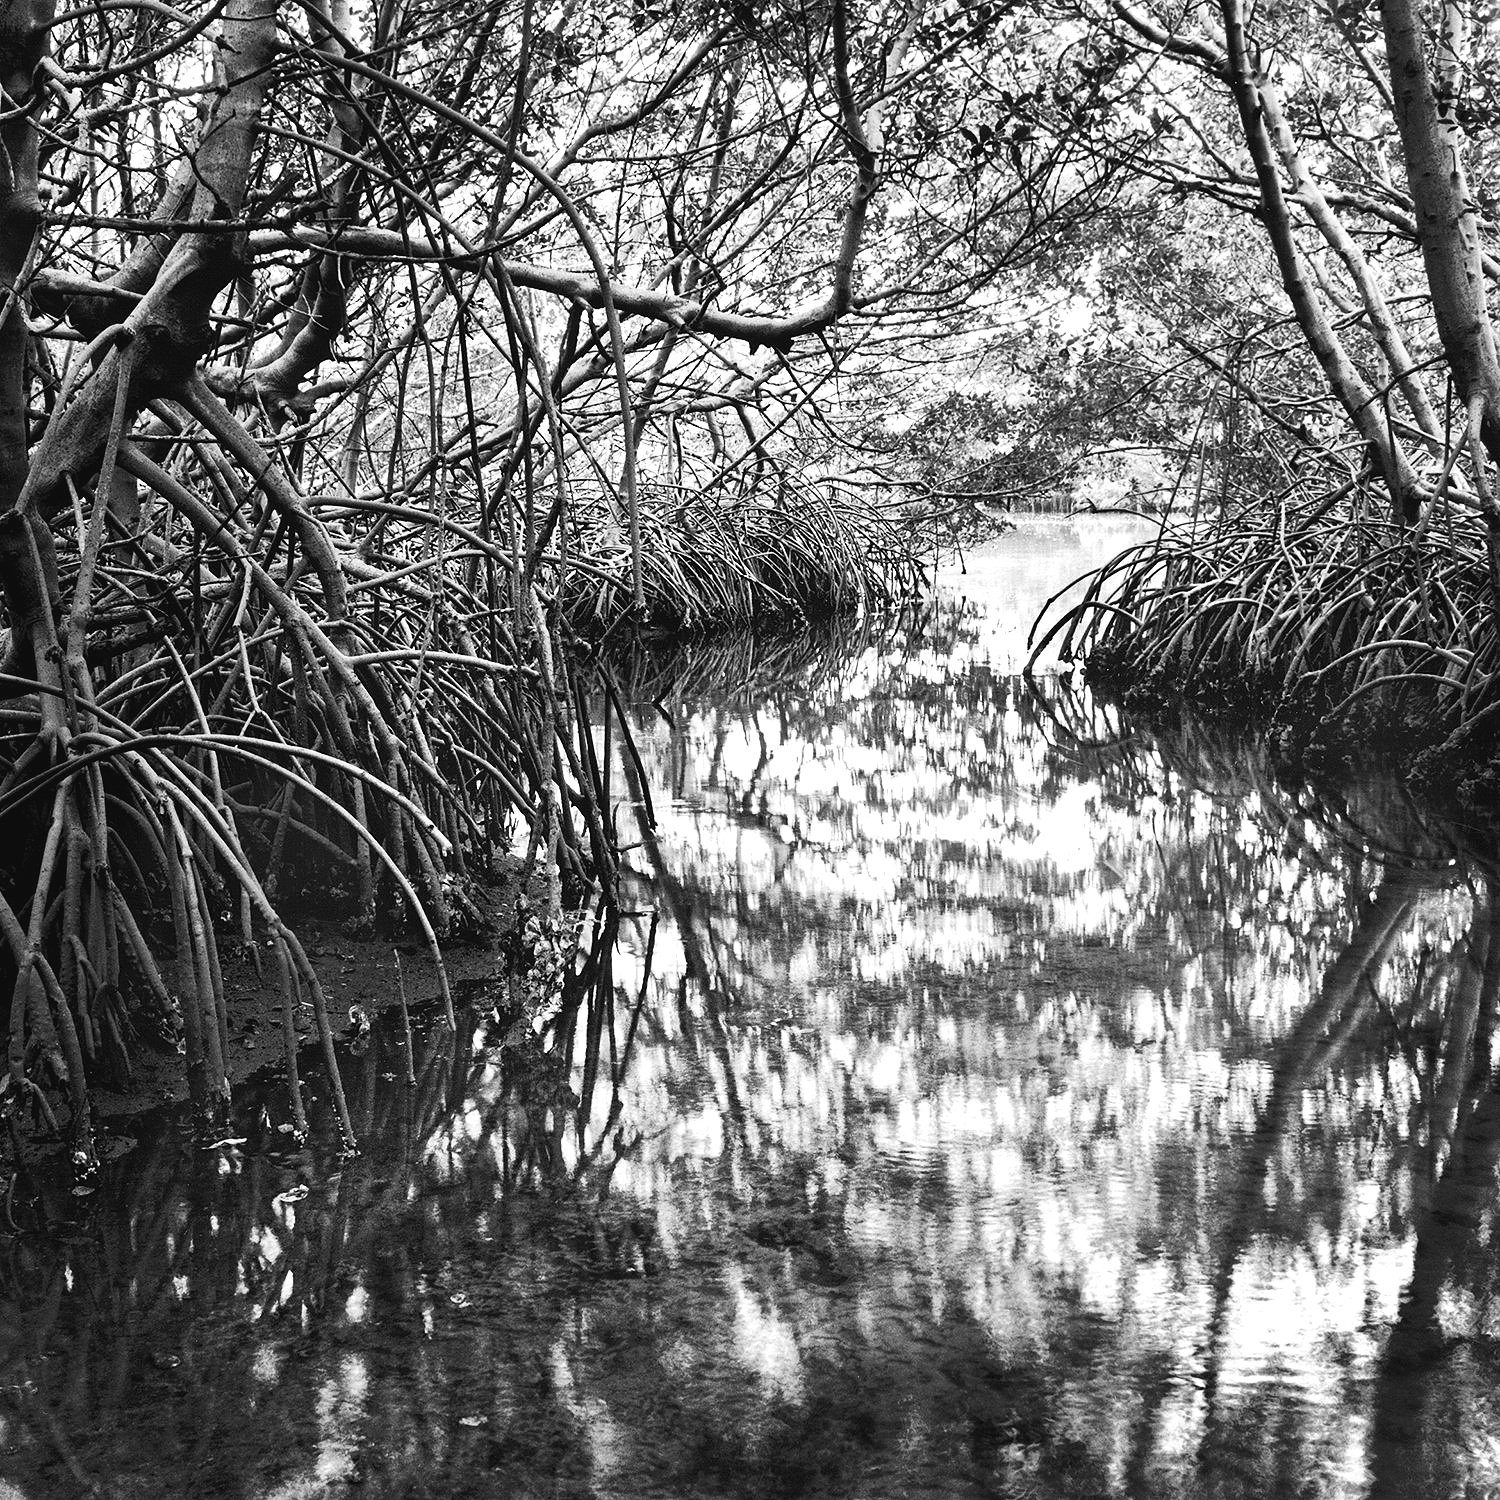 Tidal Creek, Weedon Island